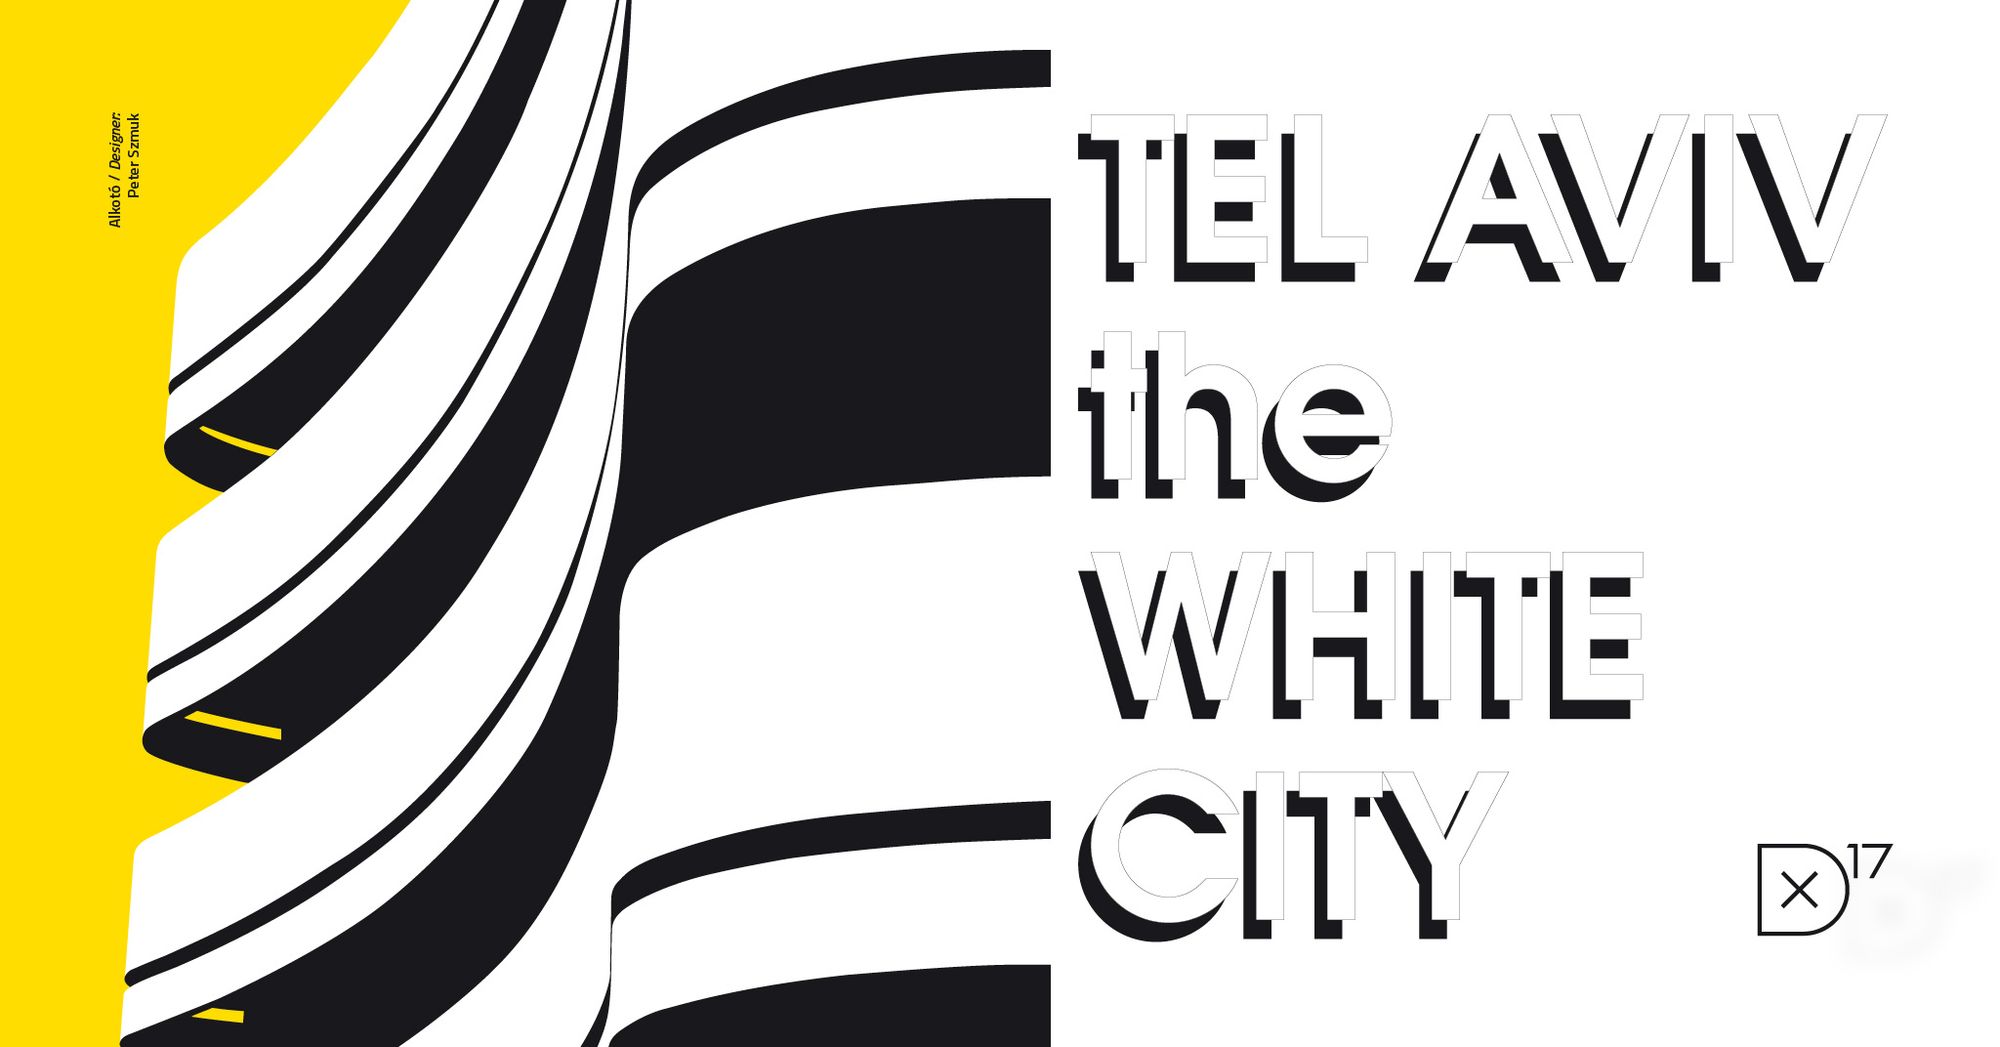 Tel-Aviv fehér városa –  Nemzetközi utazótárlat érkezik a Deák17 galériába